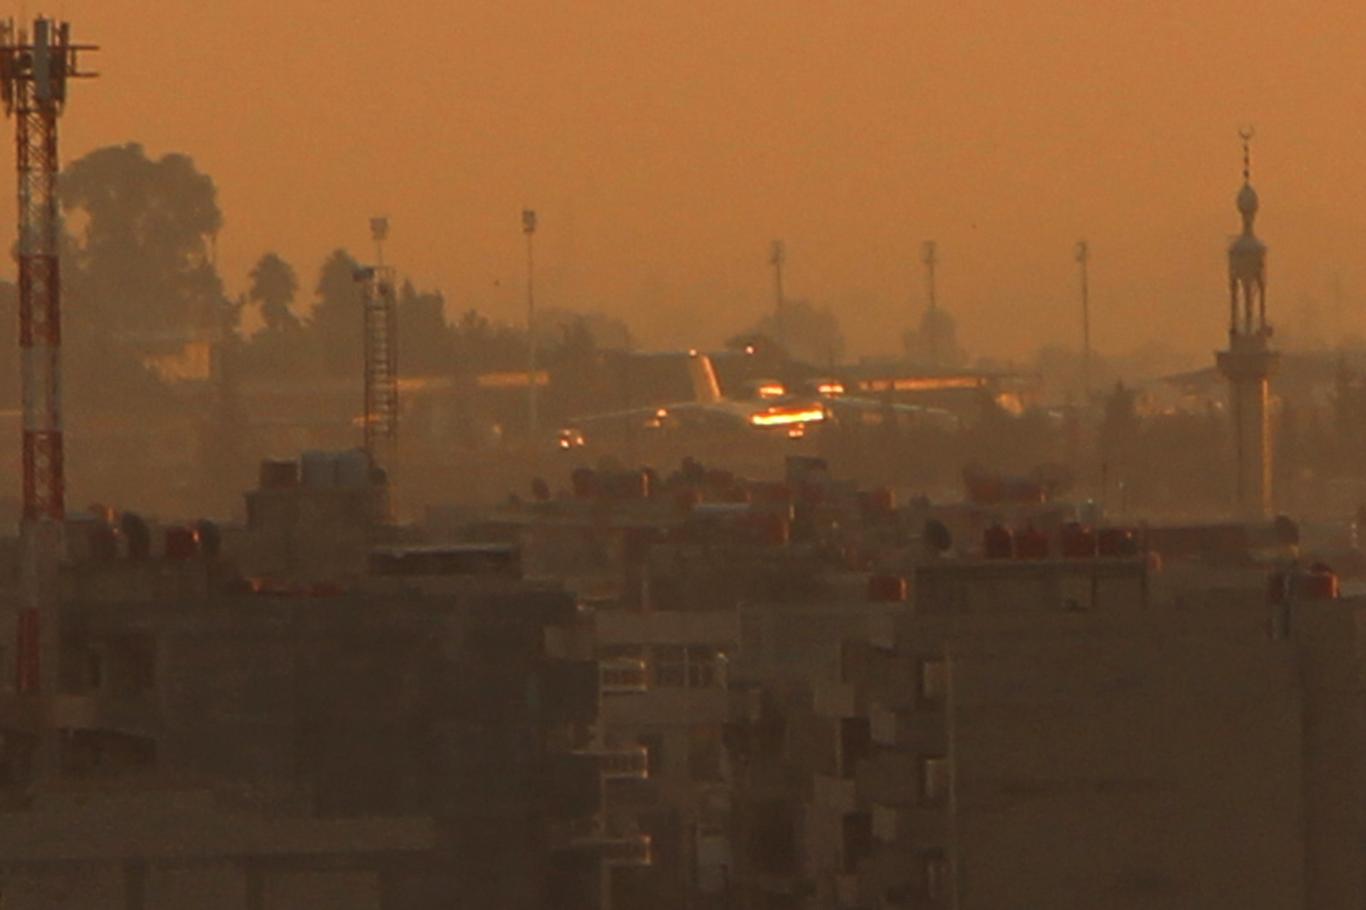 Qamışlo’ya inen özel jet uçağı görüntülendi